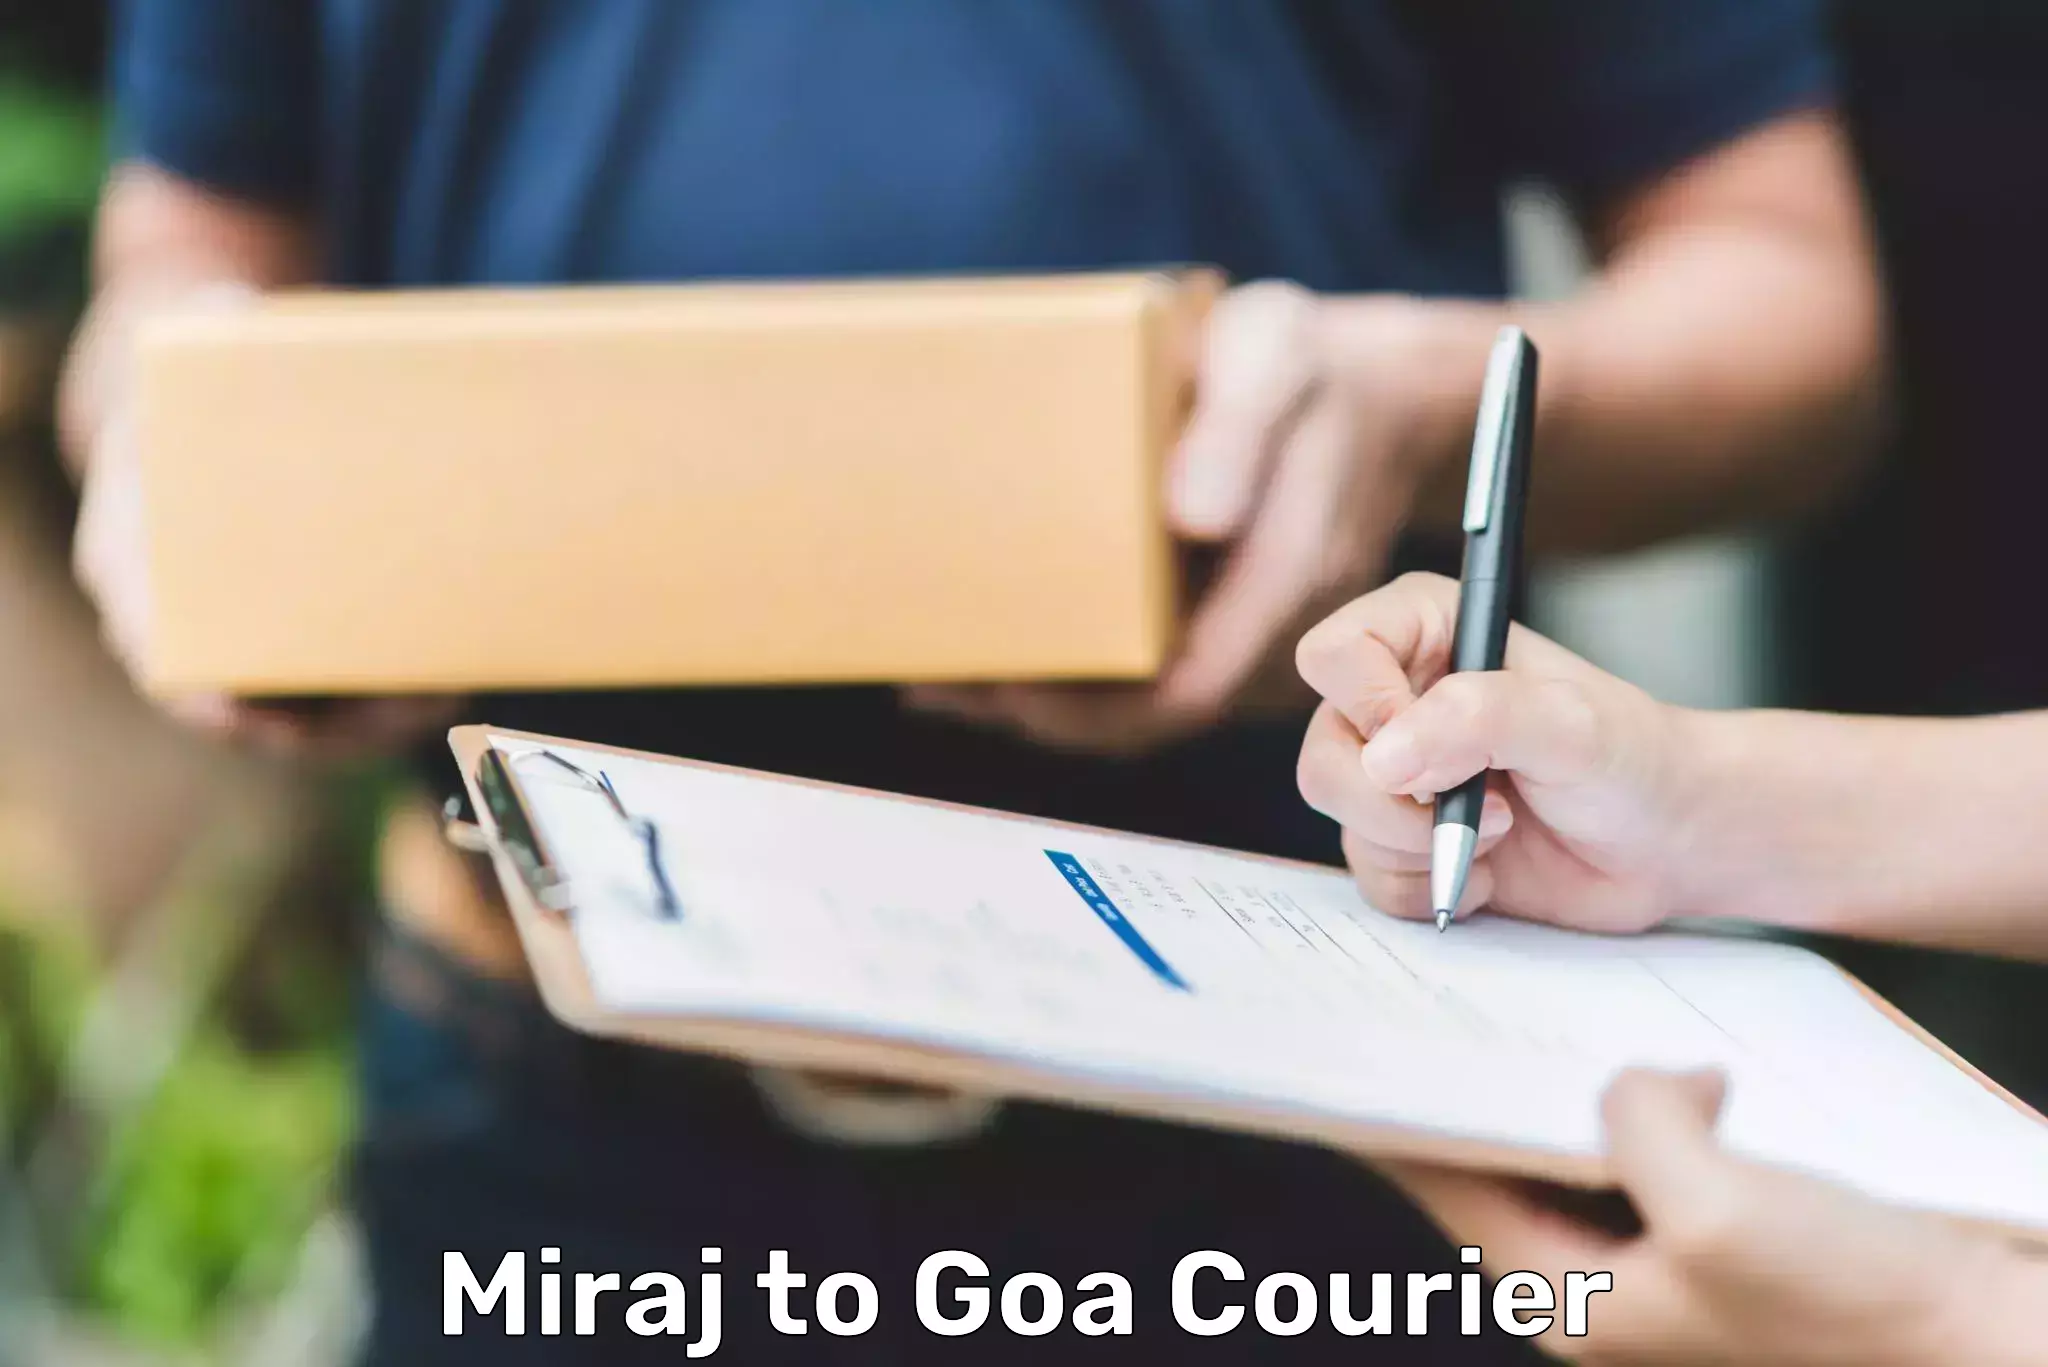 Bulk courier orders Miraj to Ponda